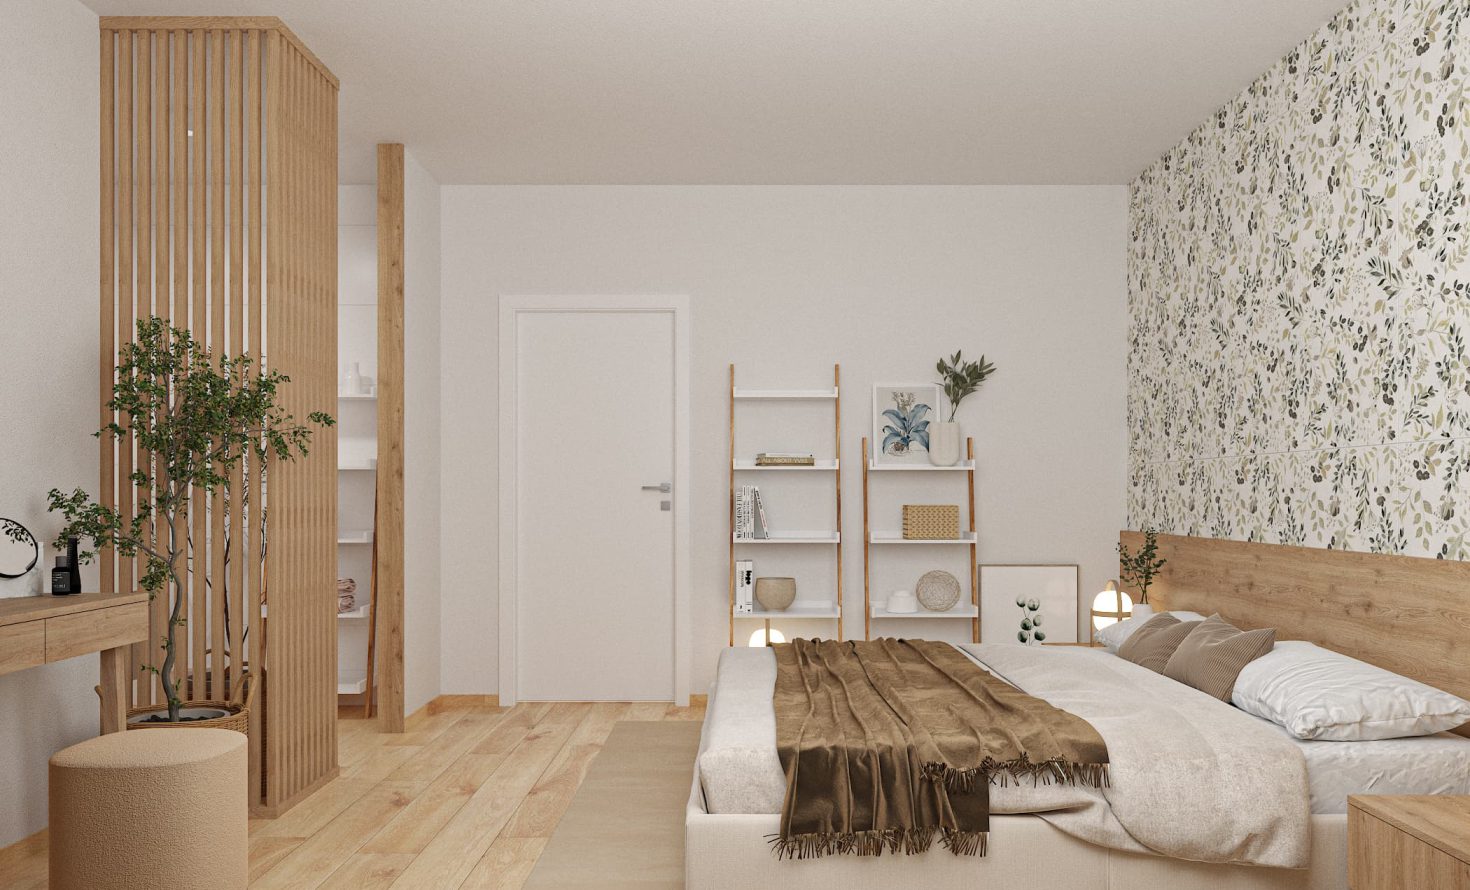 SIKO Ložnice s koupelnou, lamely oddělují prostor, dřevěná podlaha, obklady s tapetovým vzorem, velká manželská postel, regály v ložnici